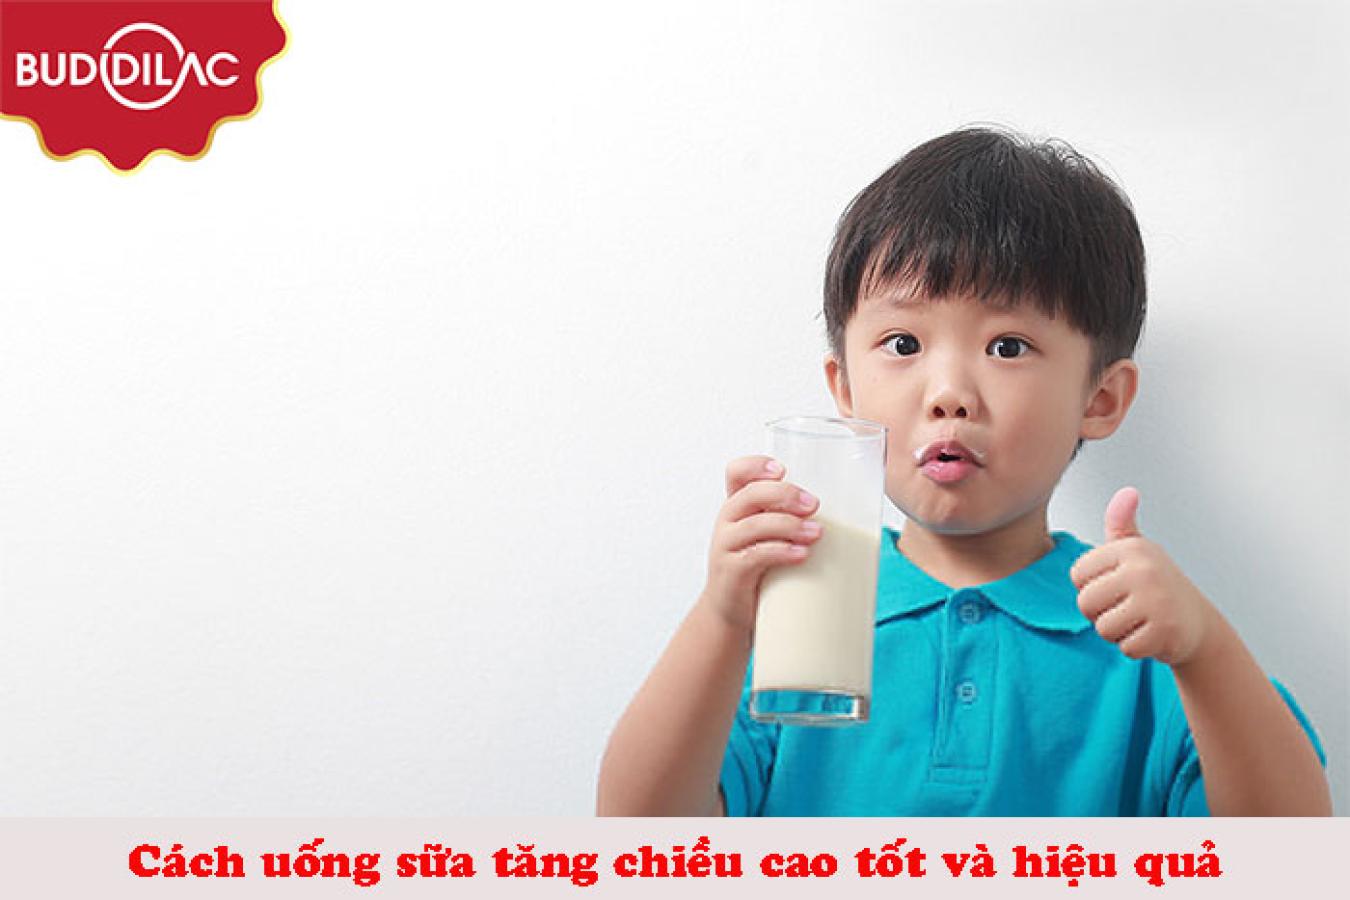 Cách uống sữa tăng chiều cao tốt và hiệu quả cho bé